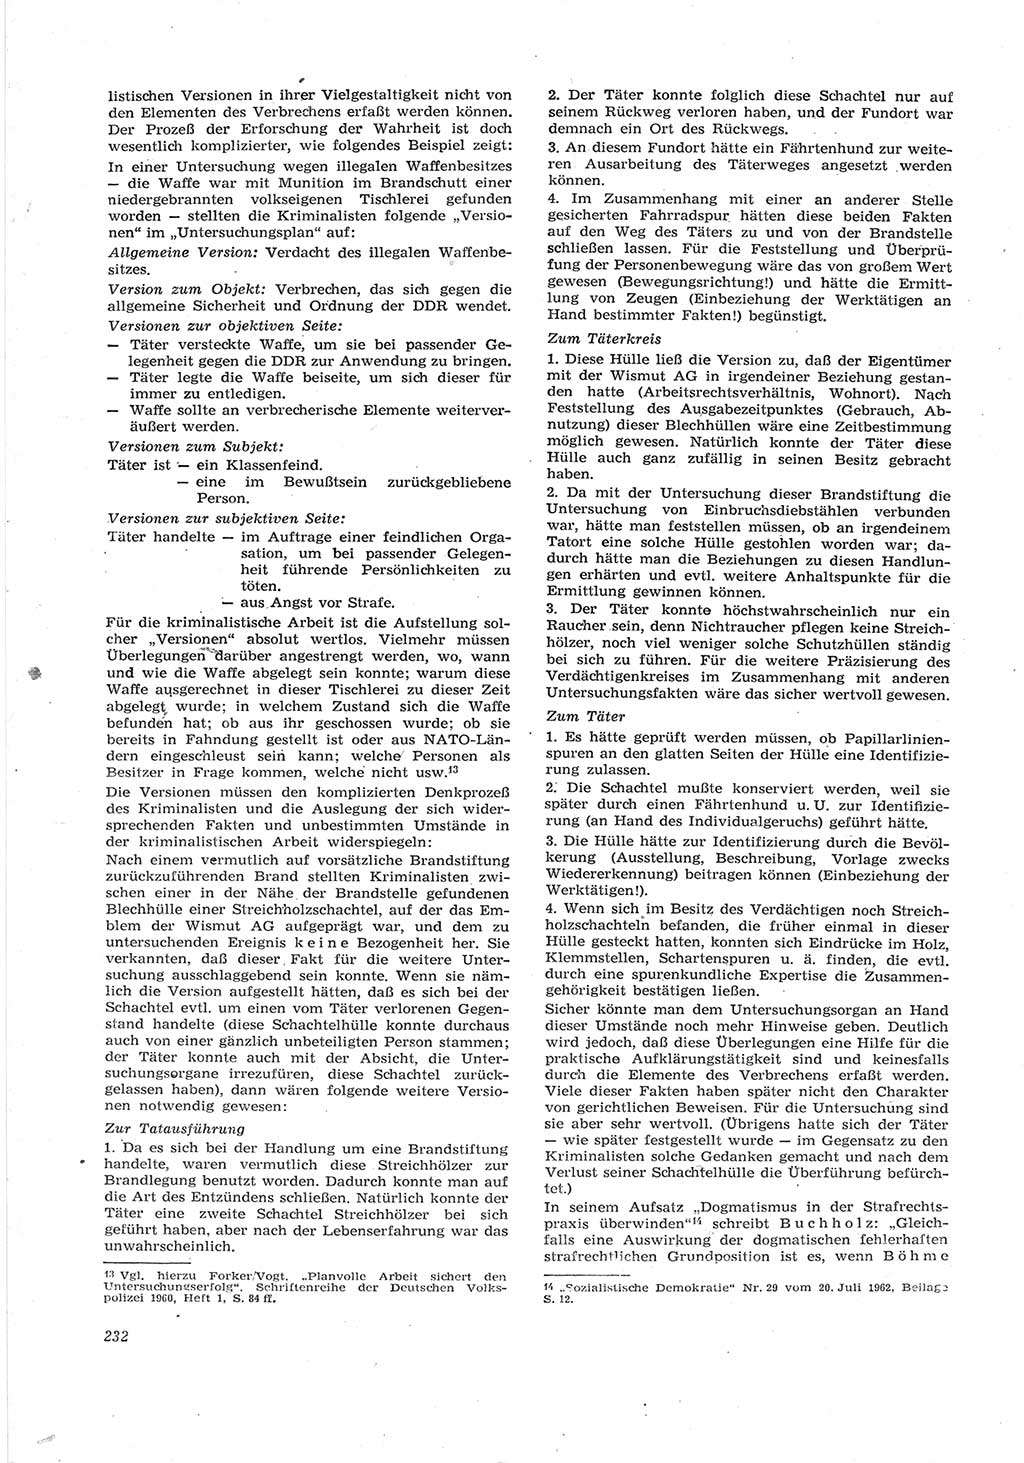 Neue Justiz (NJ), Zeitschrift für Recht und Rechtswissenschaft [Deutsche Demokratische Republik (DDR)], 17. Jahrgang 1963, Seite 232 (NJ DDR 1963, S. 232)